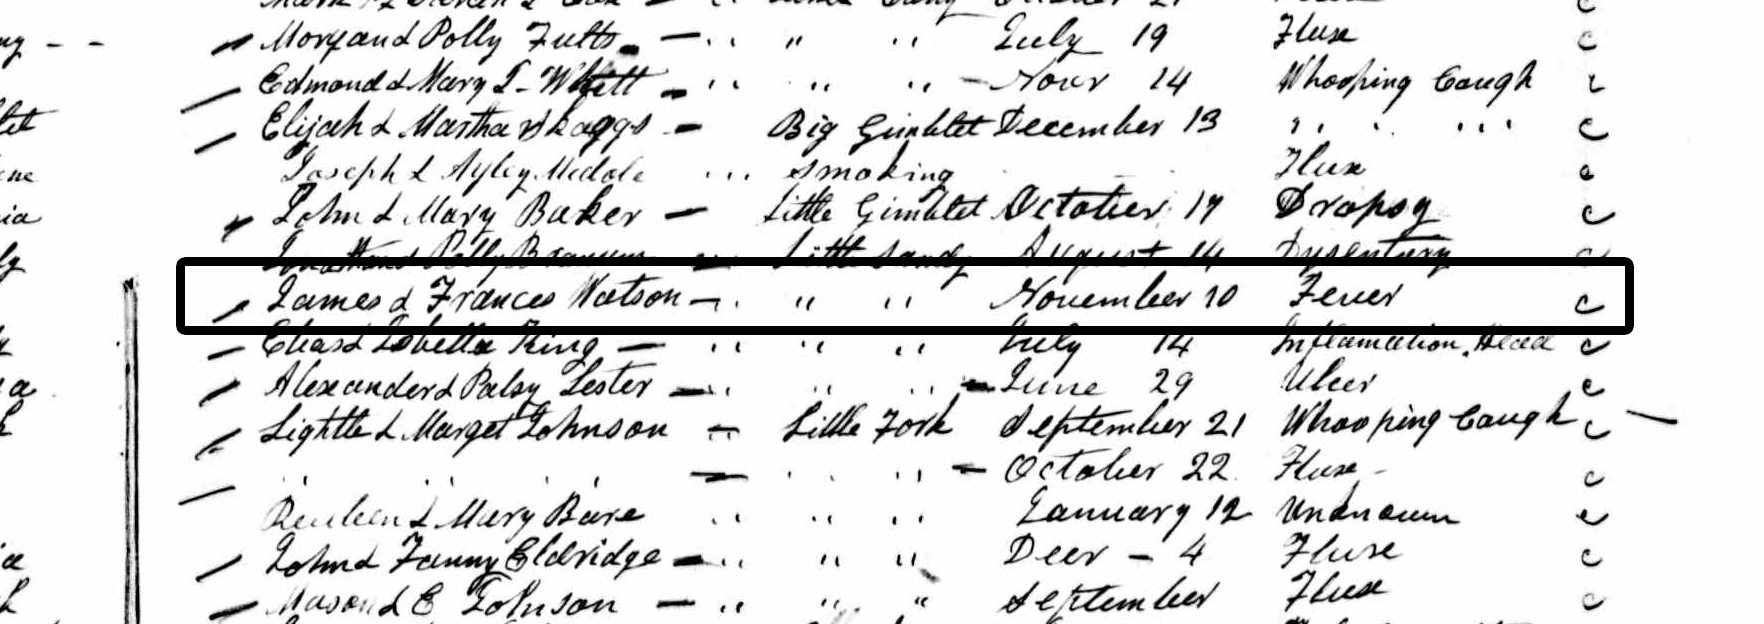 Kentucky Death Records2 18521953